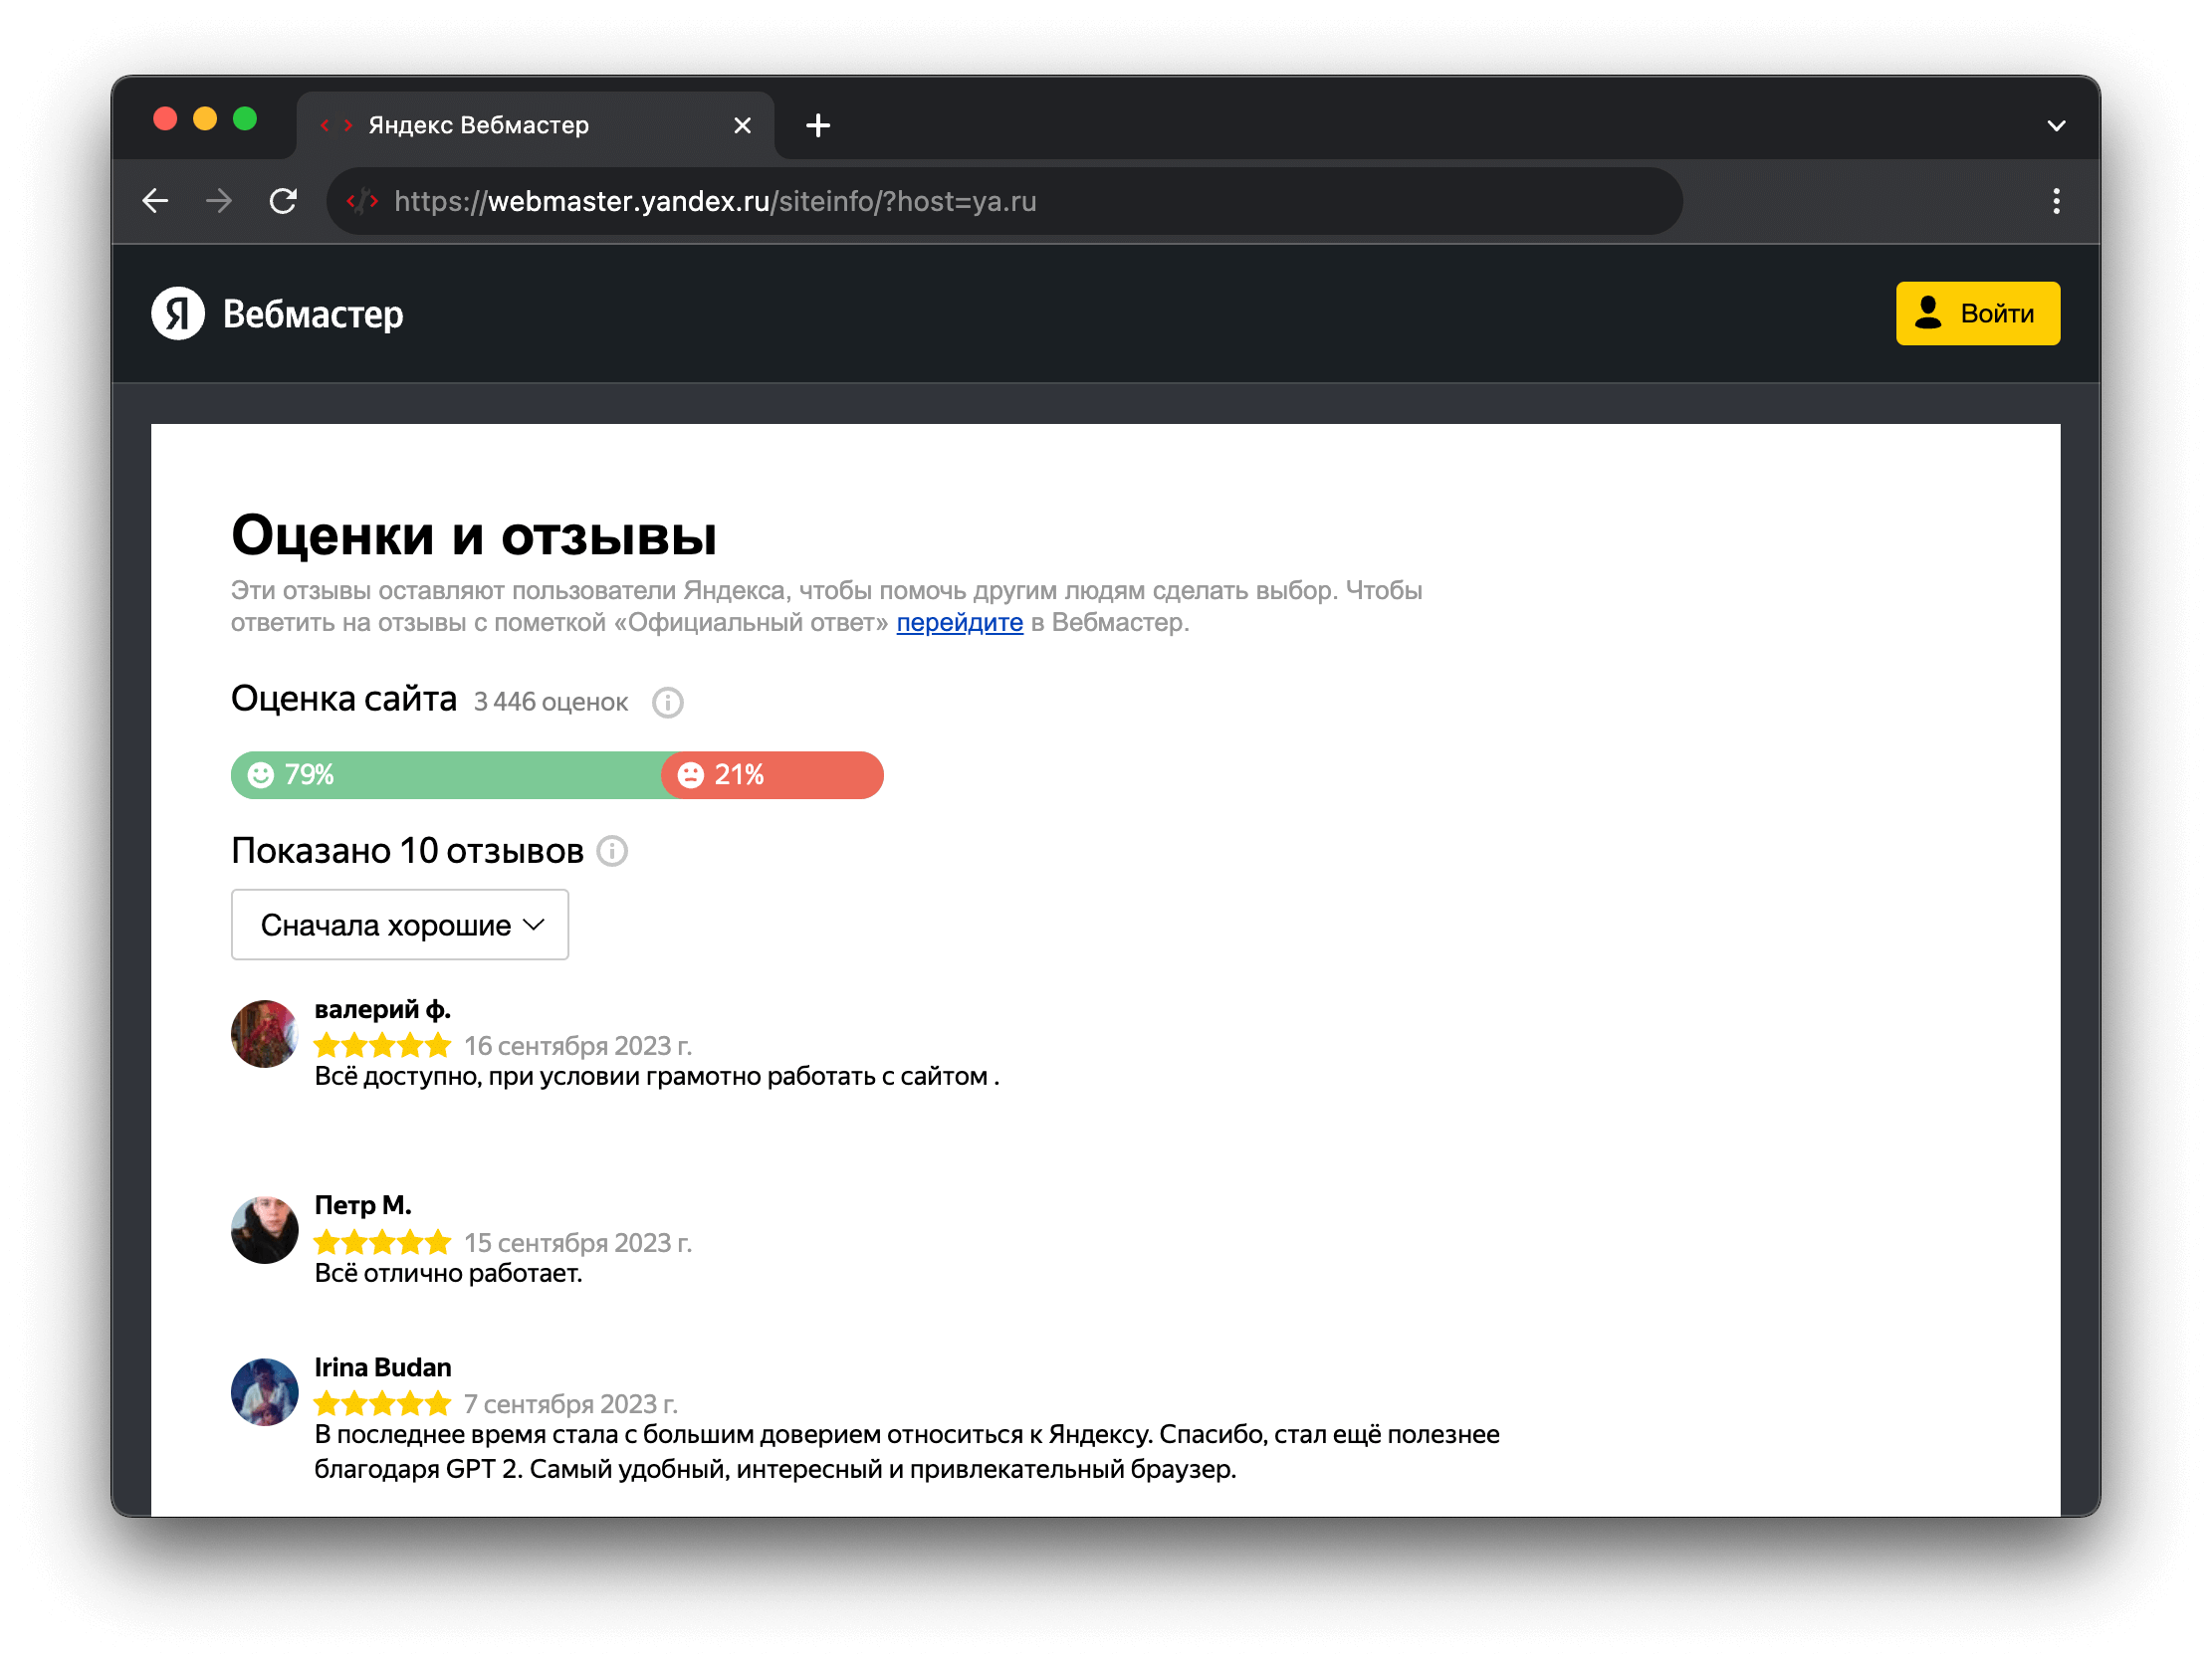 Скриншот страницы с оценками пользоваталей в сервисе Яндекс.Вебмастер